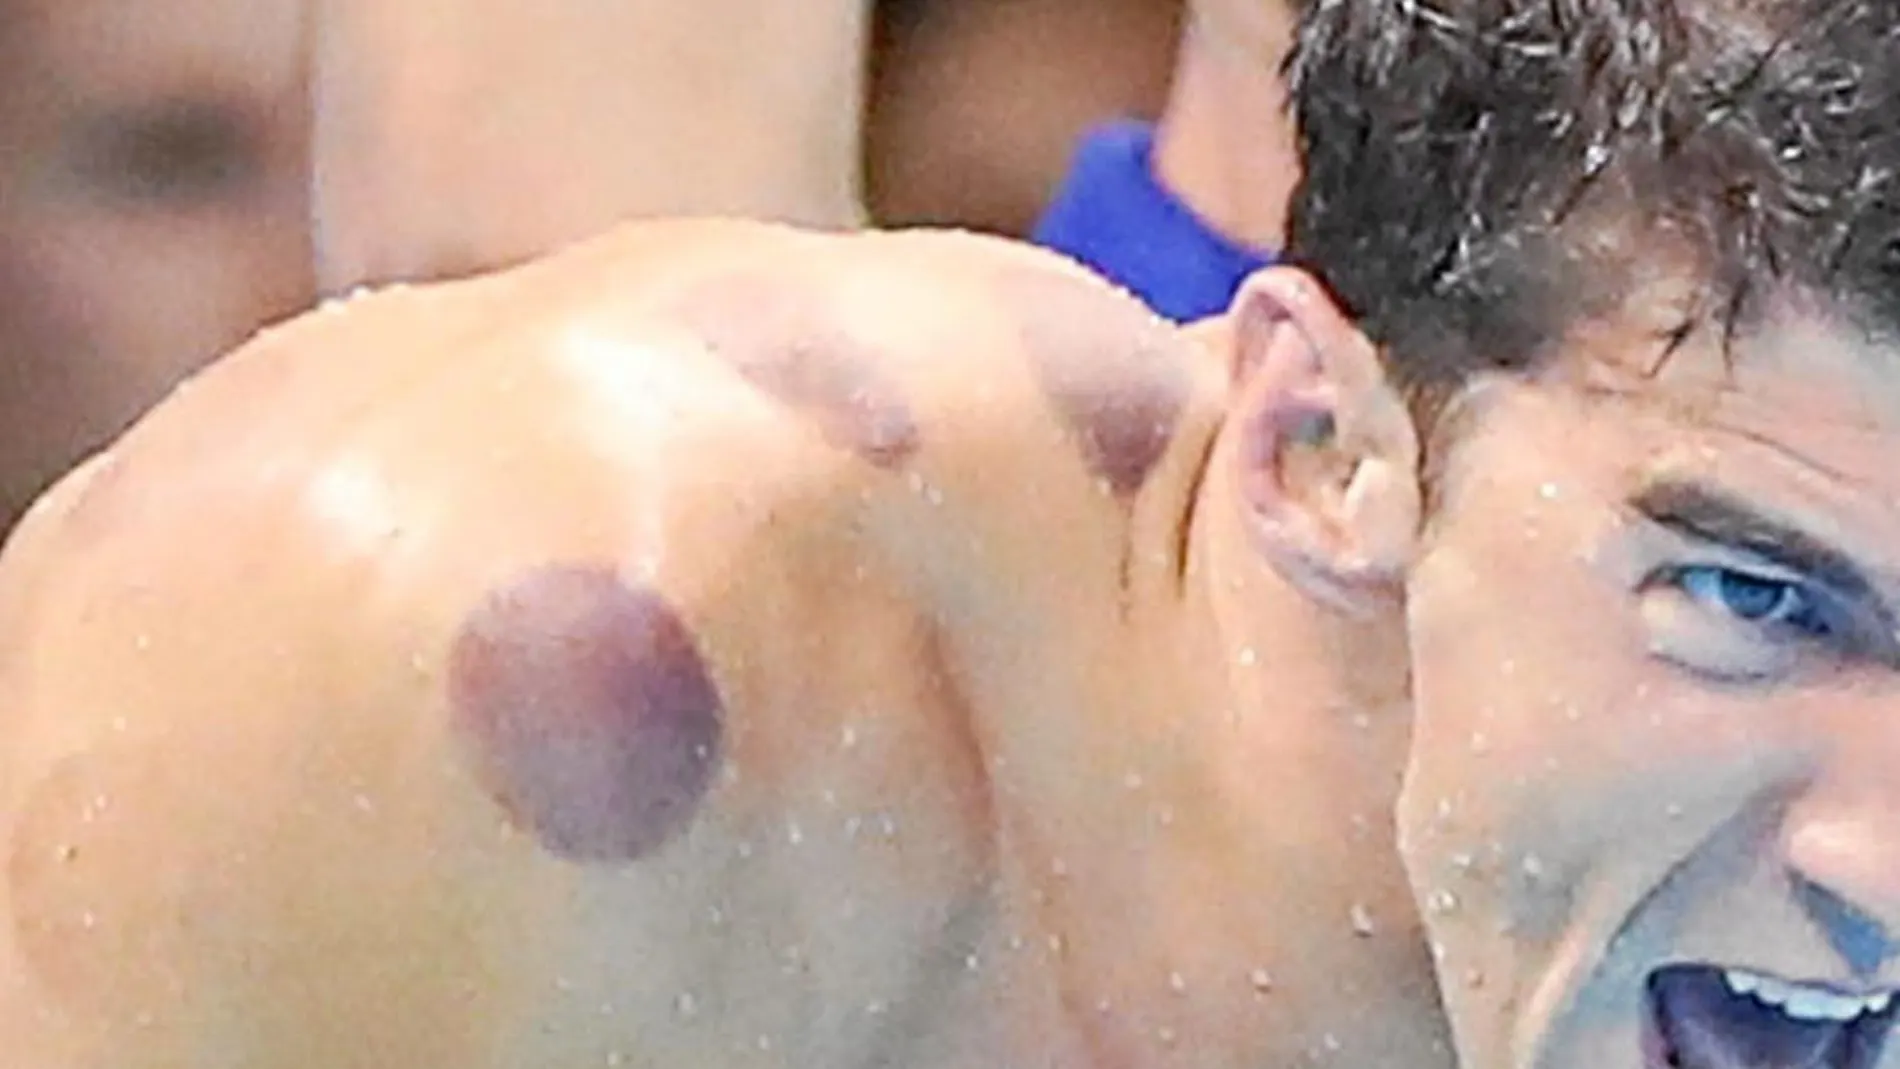 Las llamativas manchas en el cuerpo que lucía Michael Phelps